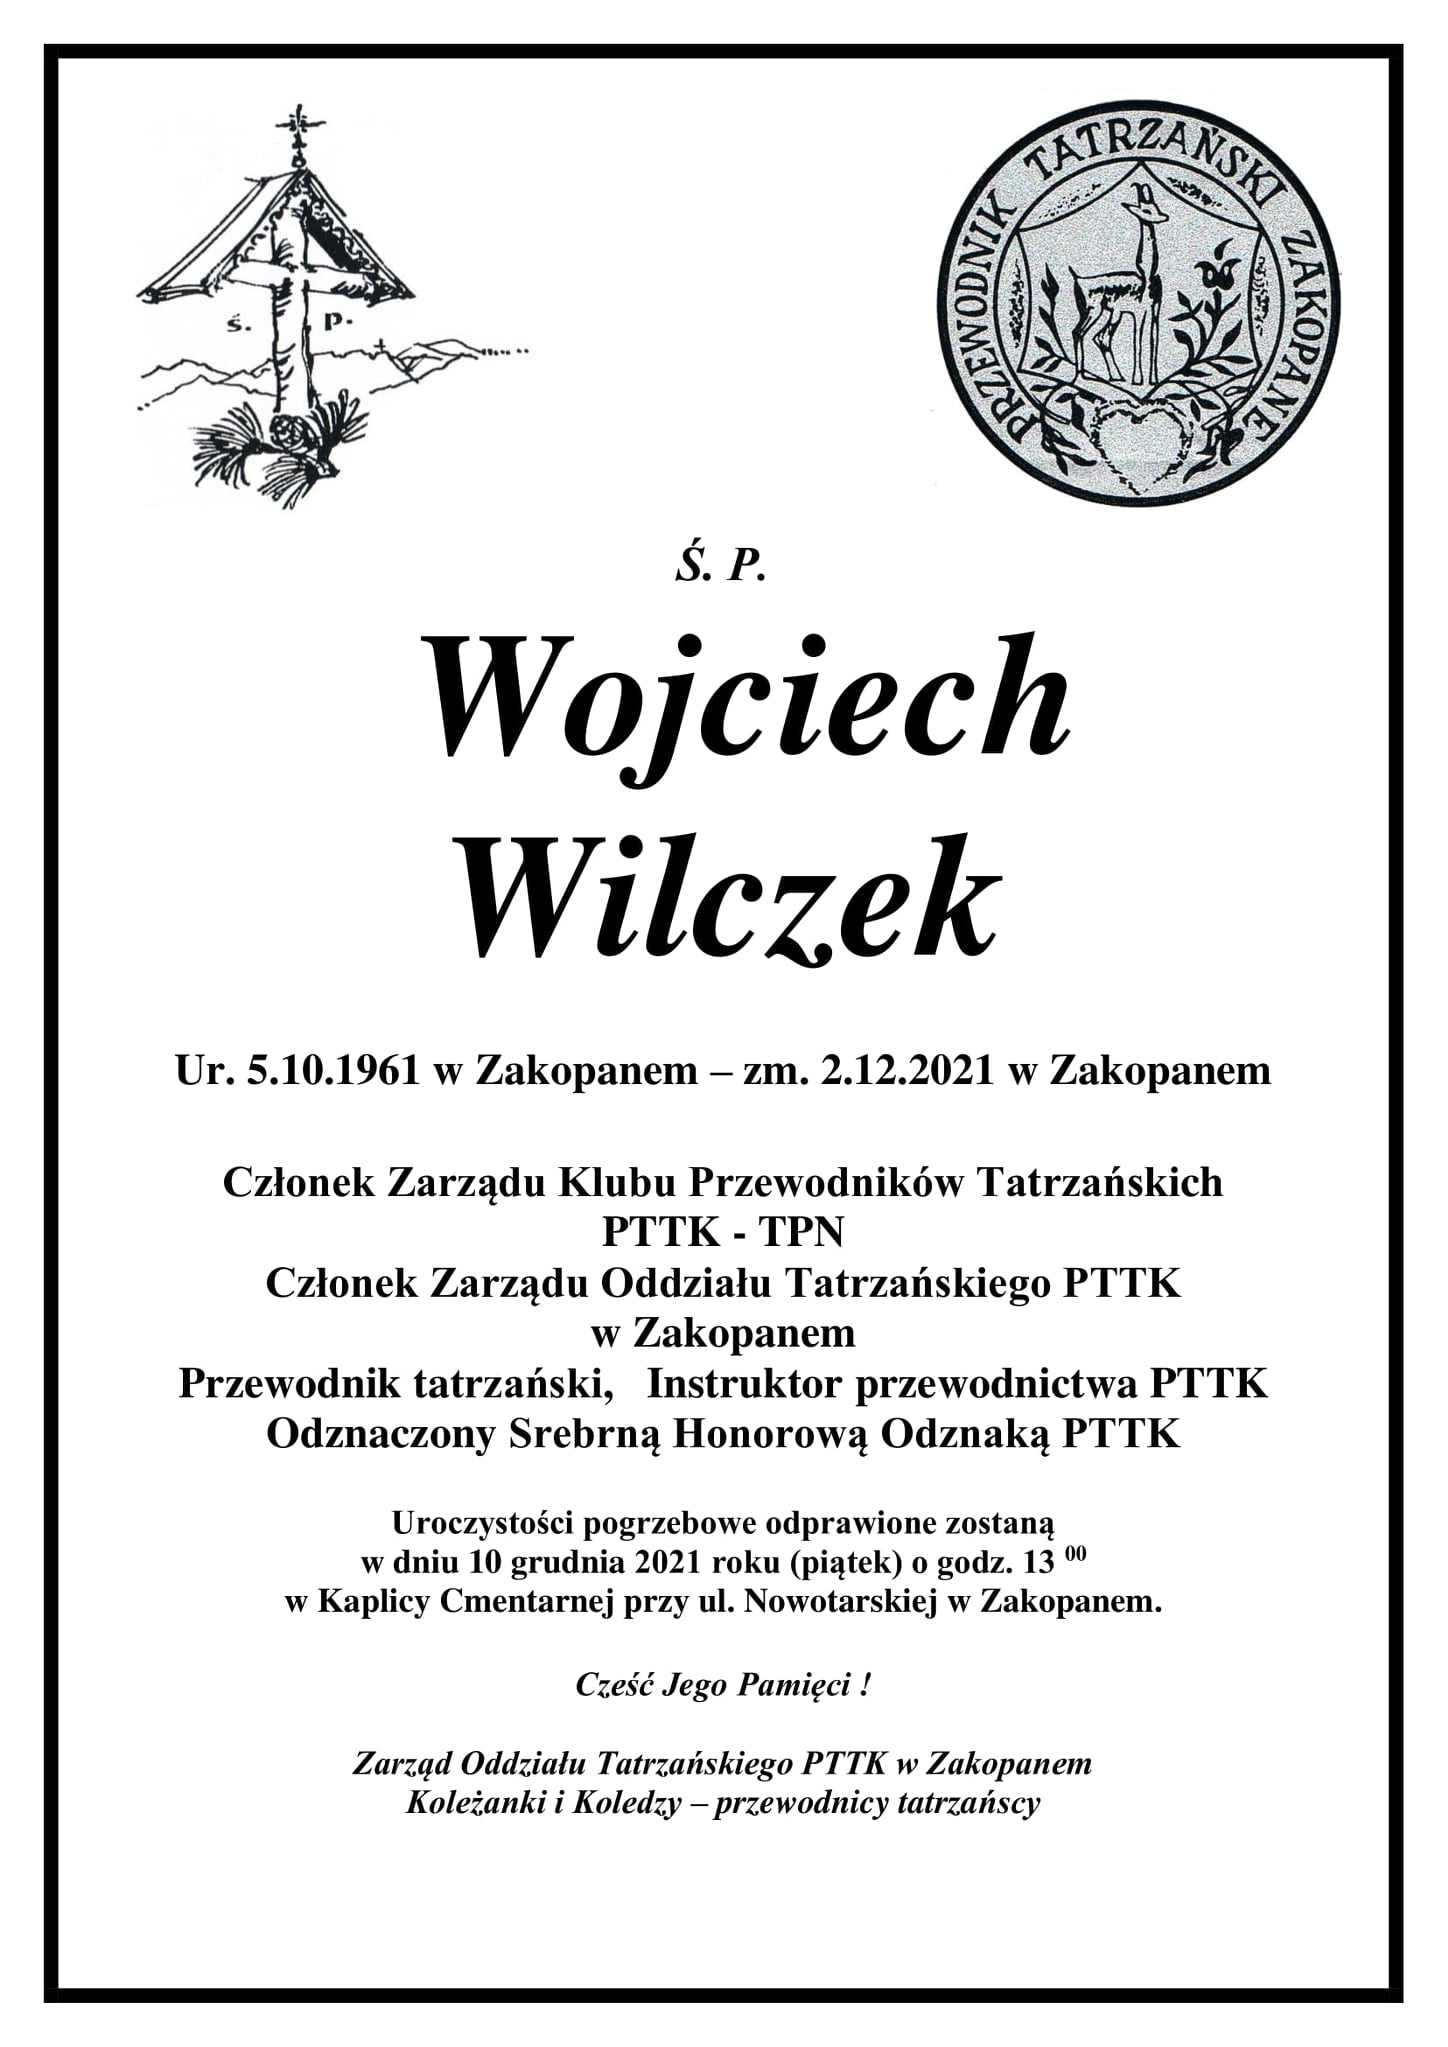 Wojciech Wilczek